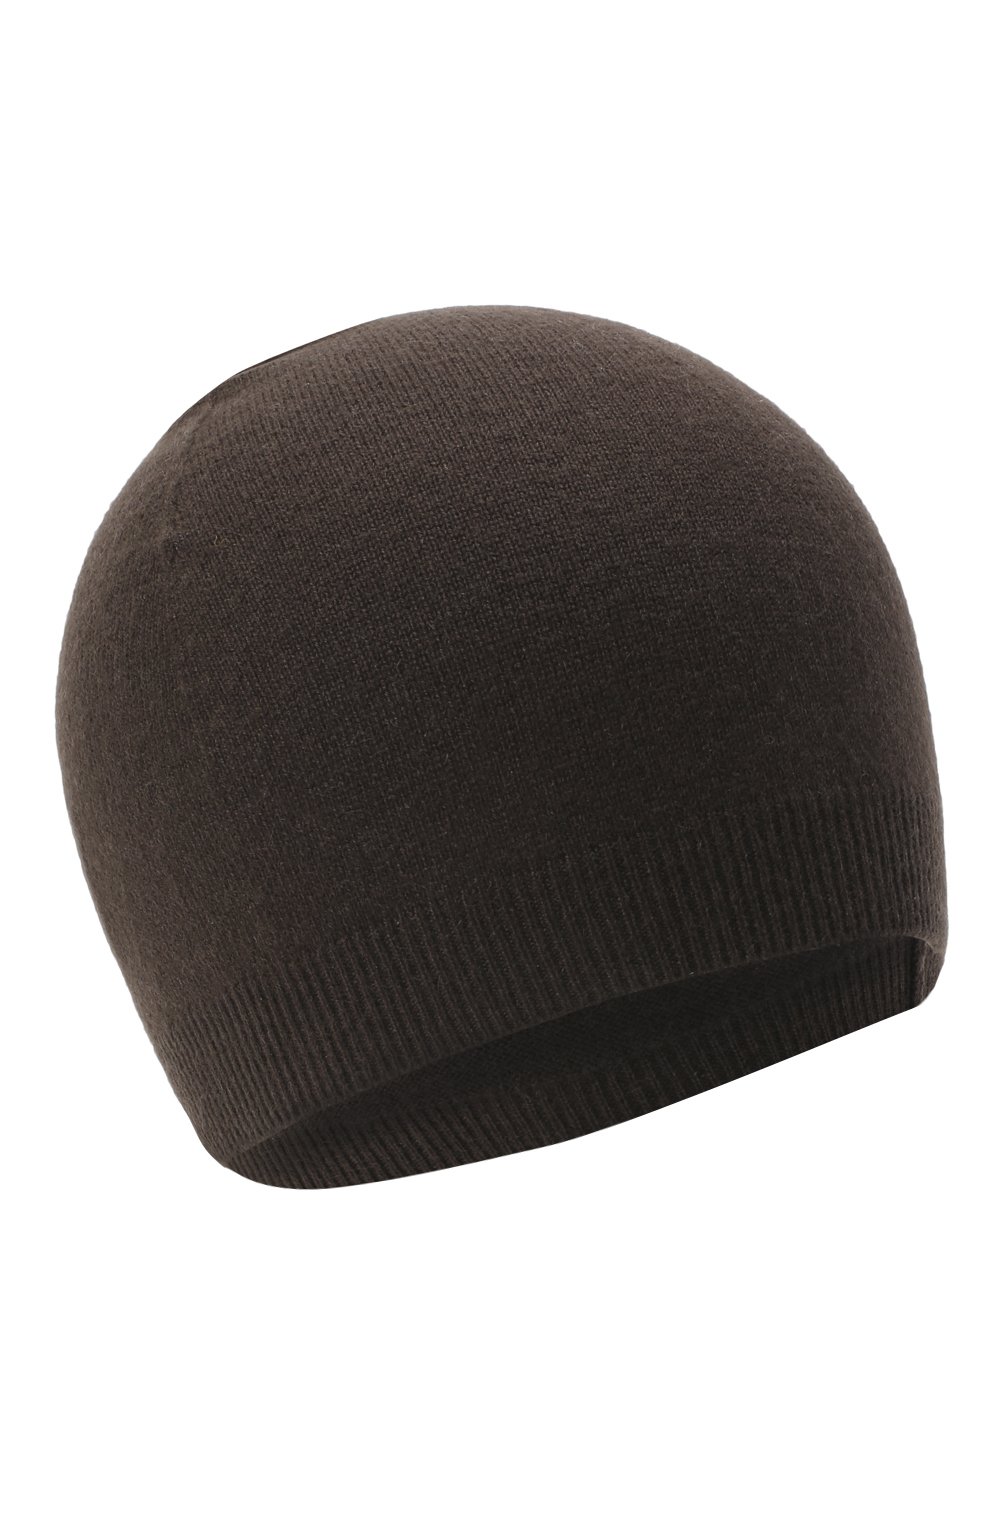 Женская кашемировая шапка RALPH LAUREN коричневого цвета, арт. 290840293 | Фото 1 (Материал: Текстиль, Кашемир, Шерсть)